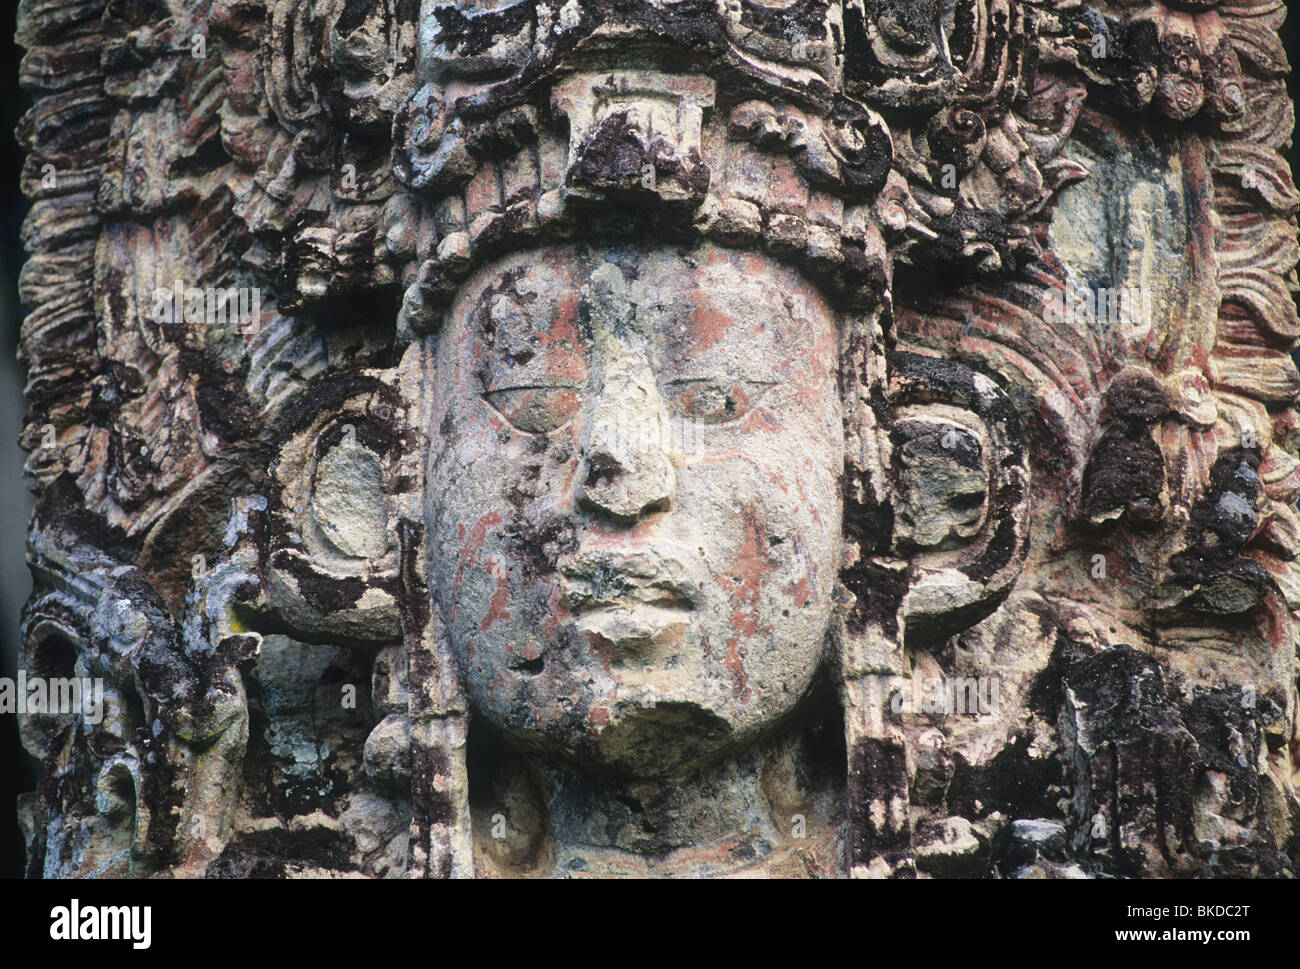 Honduras, Copan Maya-Ruinen, Stela H, Main Plaza, Gesicht von 18 Kaninchen, 13. Herrscher. Stockfoto